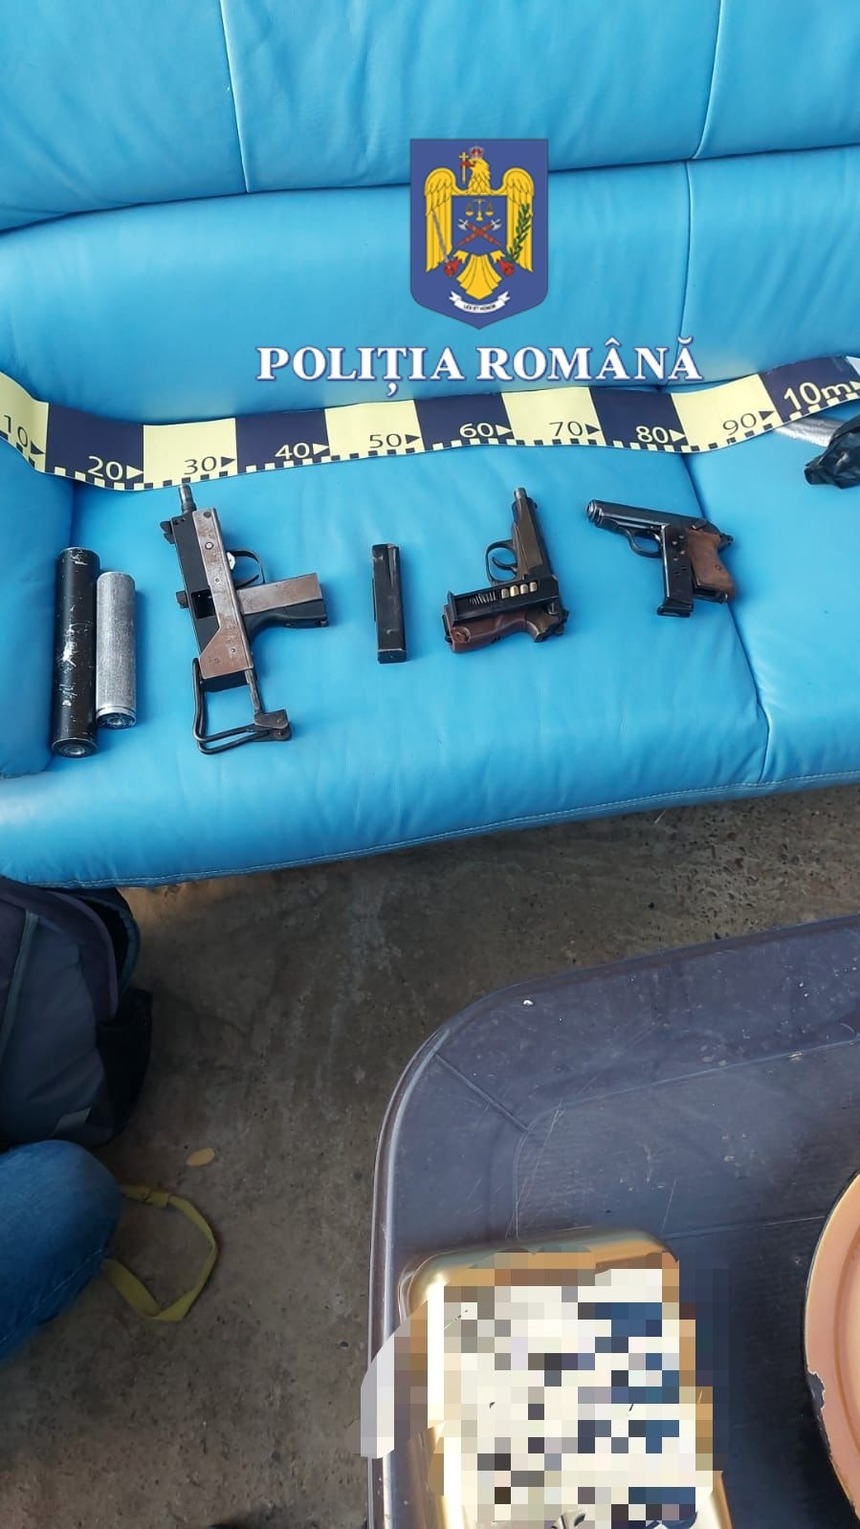 IGPR: 129 de arme de foc şi 1.492 de arme de alarmă şi semnalizare, care pot fi convertite pentru a folosi muniţie reală, confiscate în Uniunea Europeană, în cadrul operaţiunii Conversus, condusă de Poliţia Română